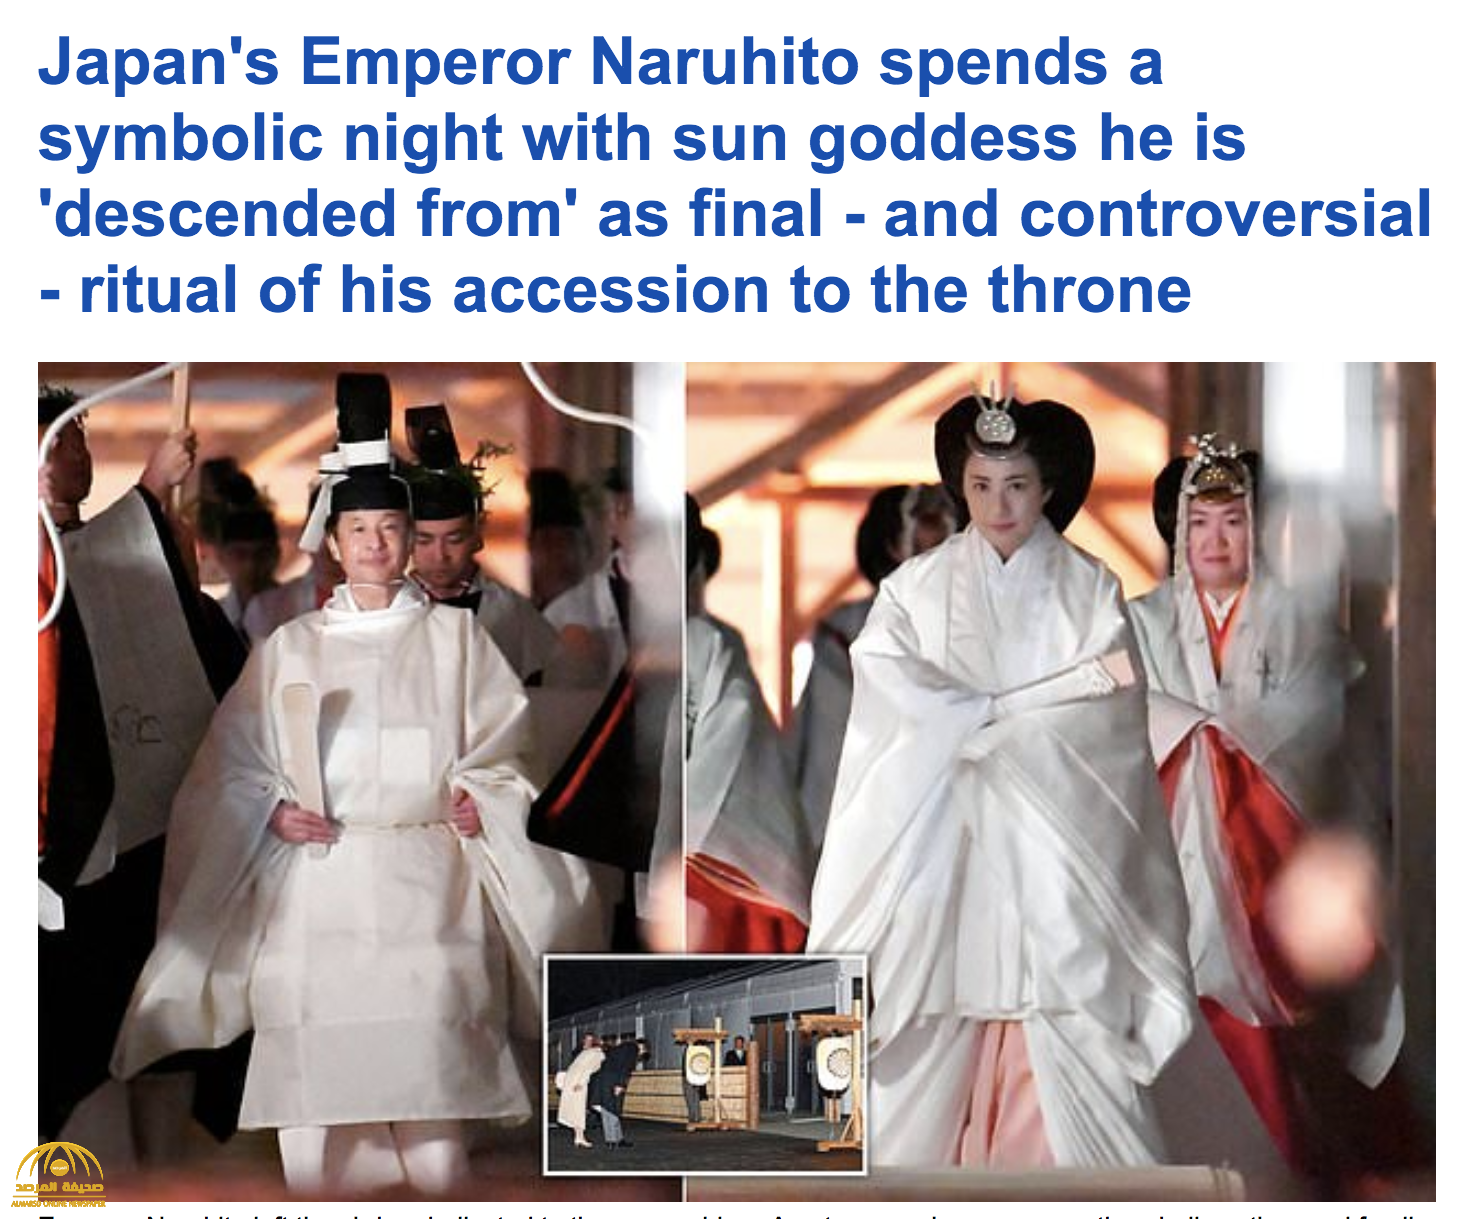 وليمة وحفل واعتقاد بوجود علاقة زواج بينهما.. شاهد: إمبراطور اليابان يقضي ليلة مع إلهة الشمس بتكلفة 25 مليون دولار!